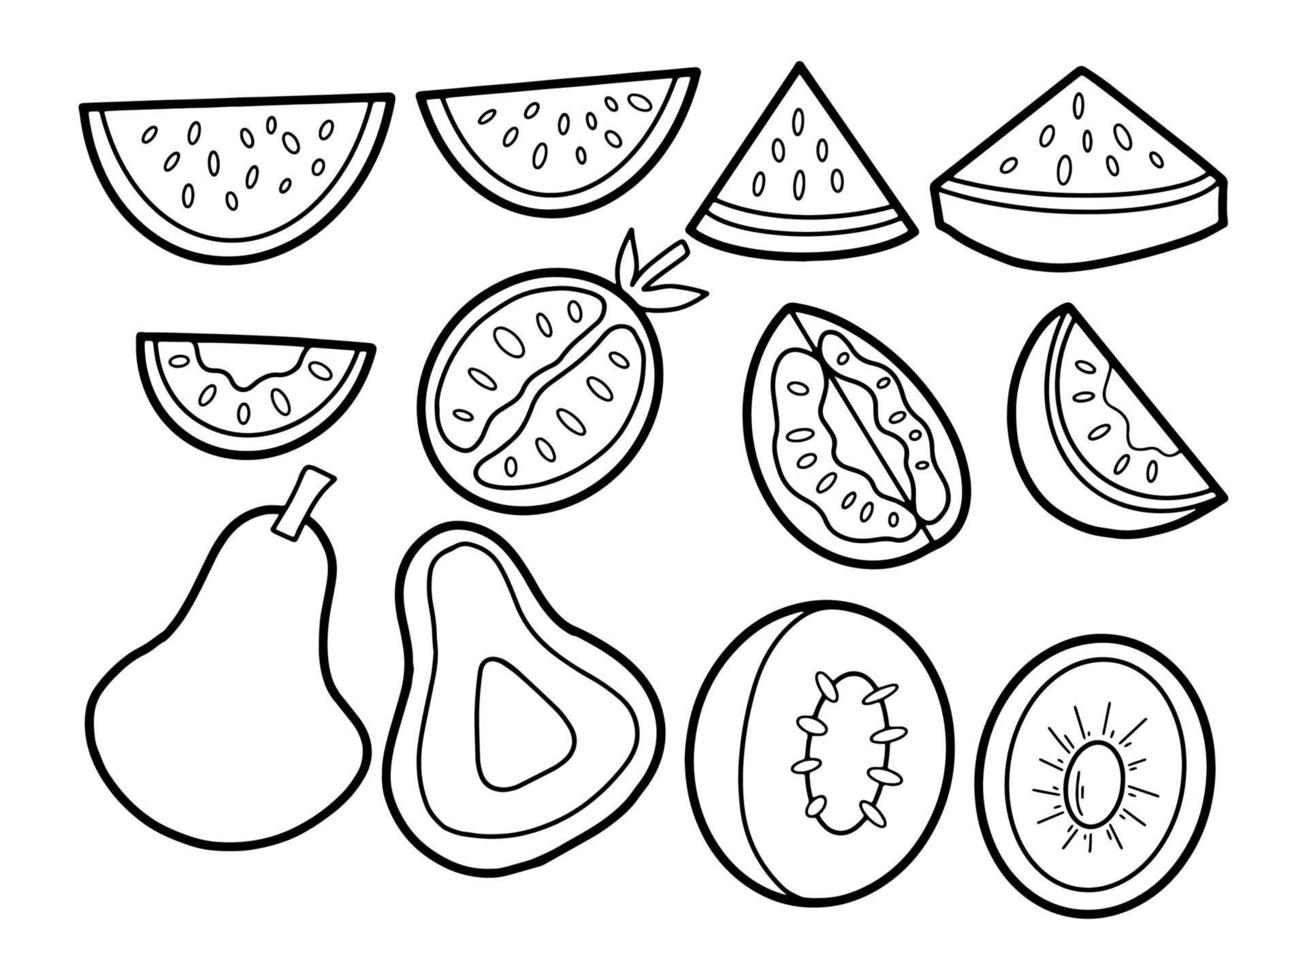 verzameling gesneden groenten en fruit doodle illustratie vector